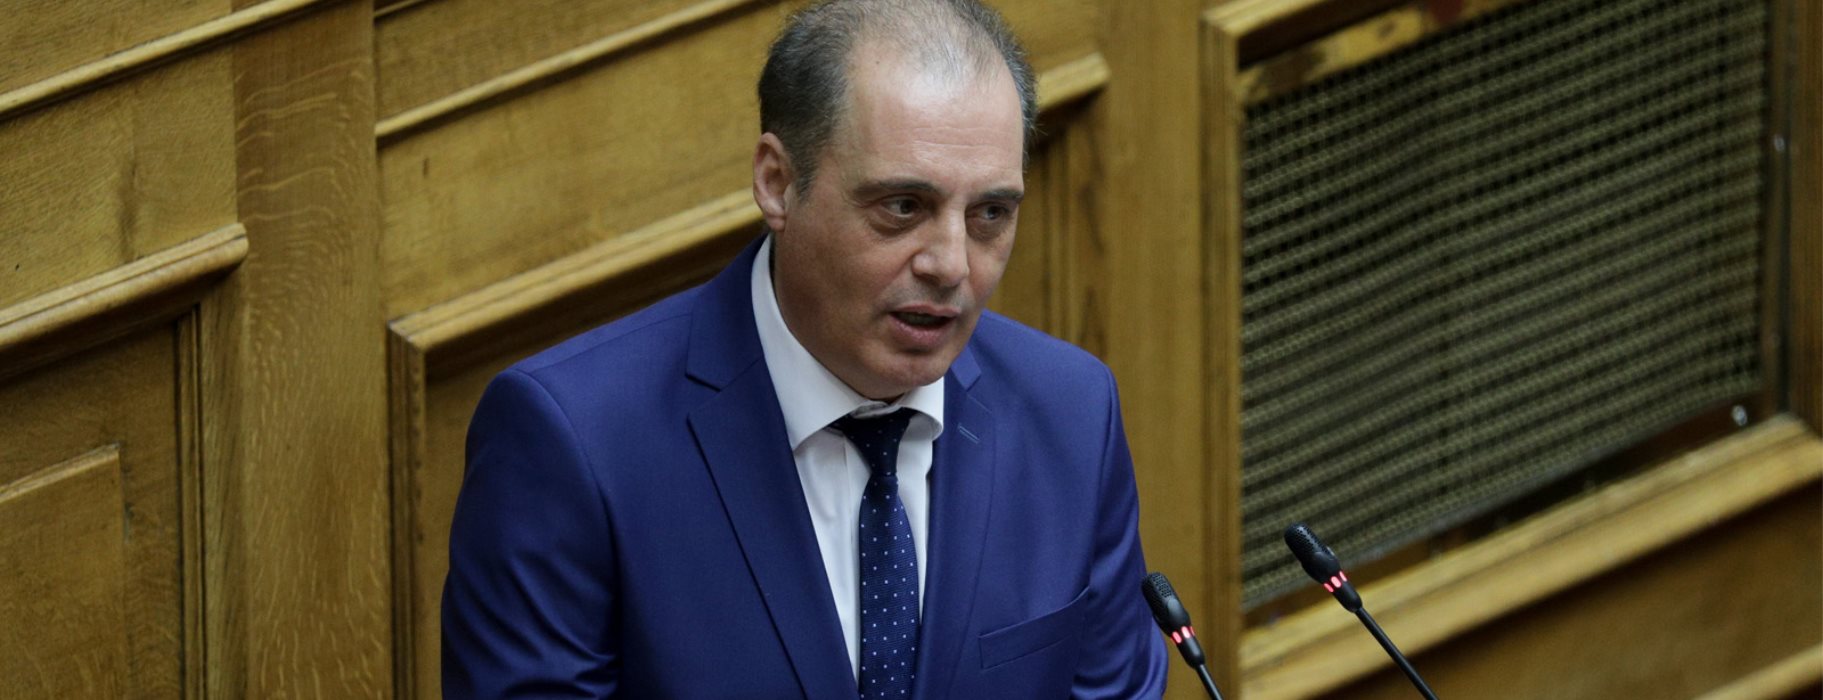 Κ.Βελόπουλος: «Να ενημερωθούν οι πολιτικοί αρχηγοί για τις διαπραγματεύσεις με την Τουρκία»